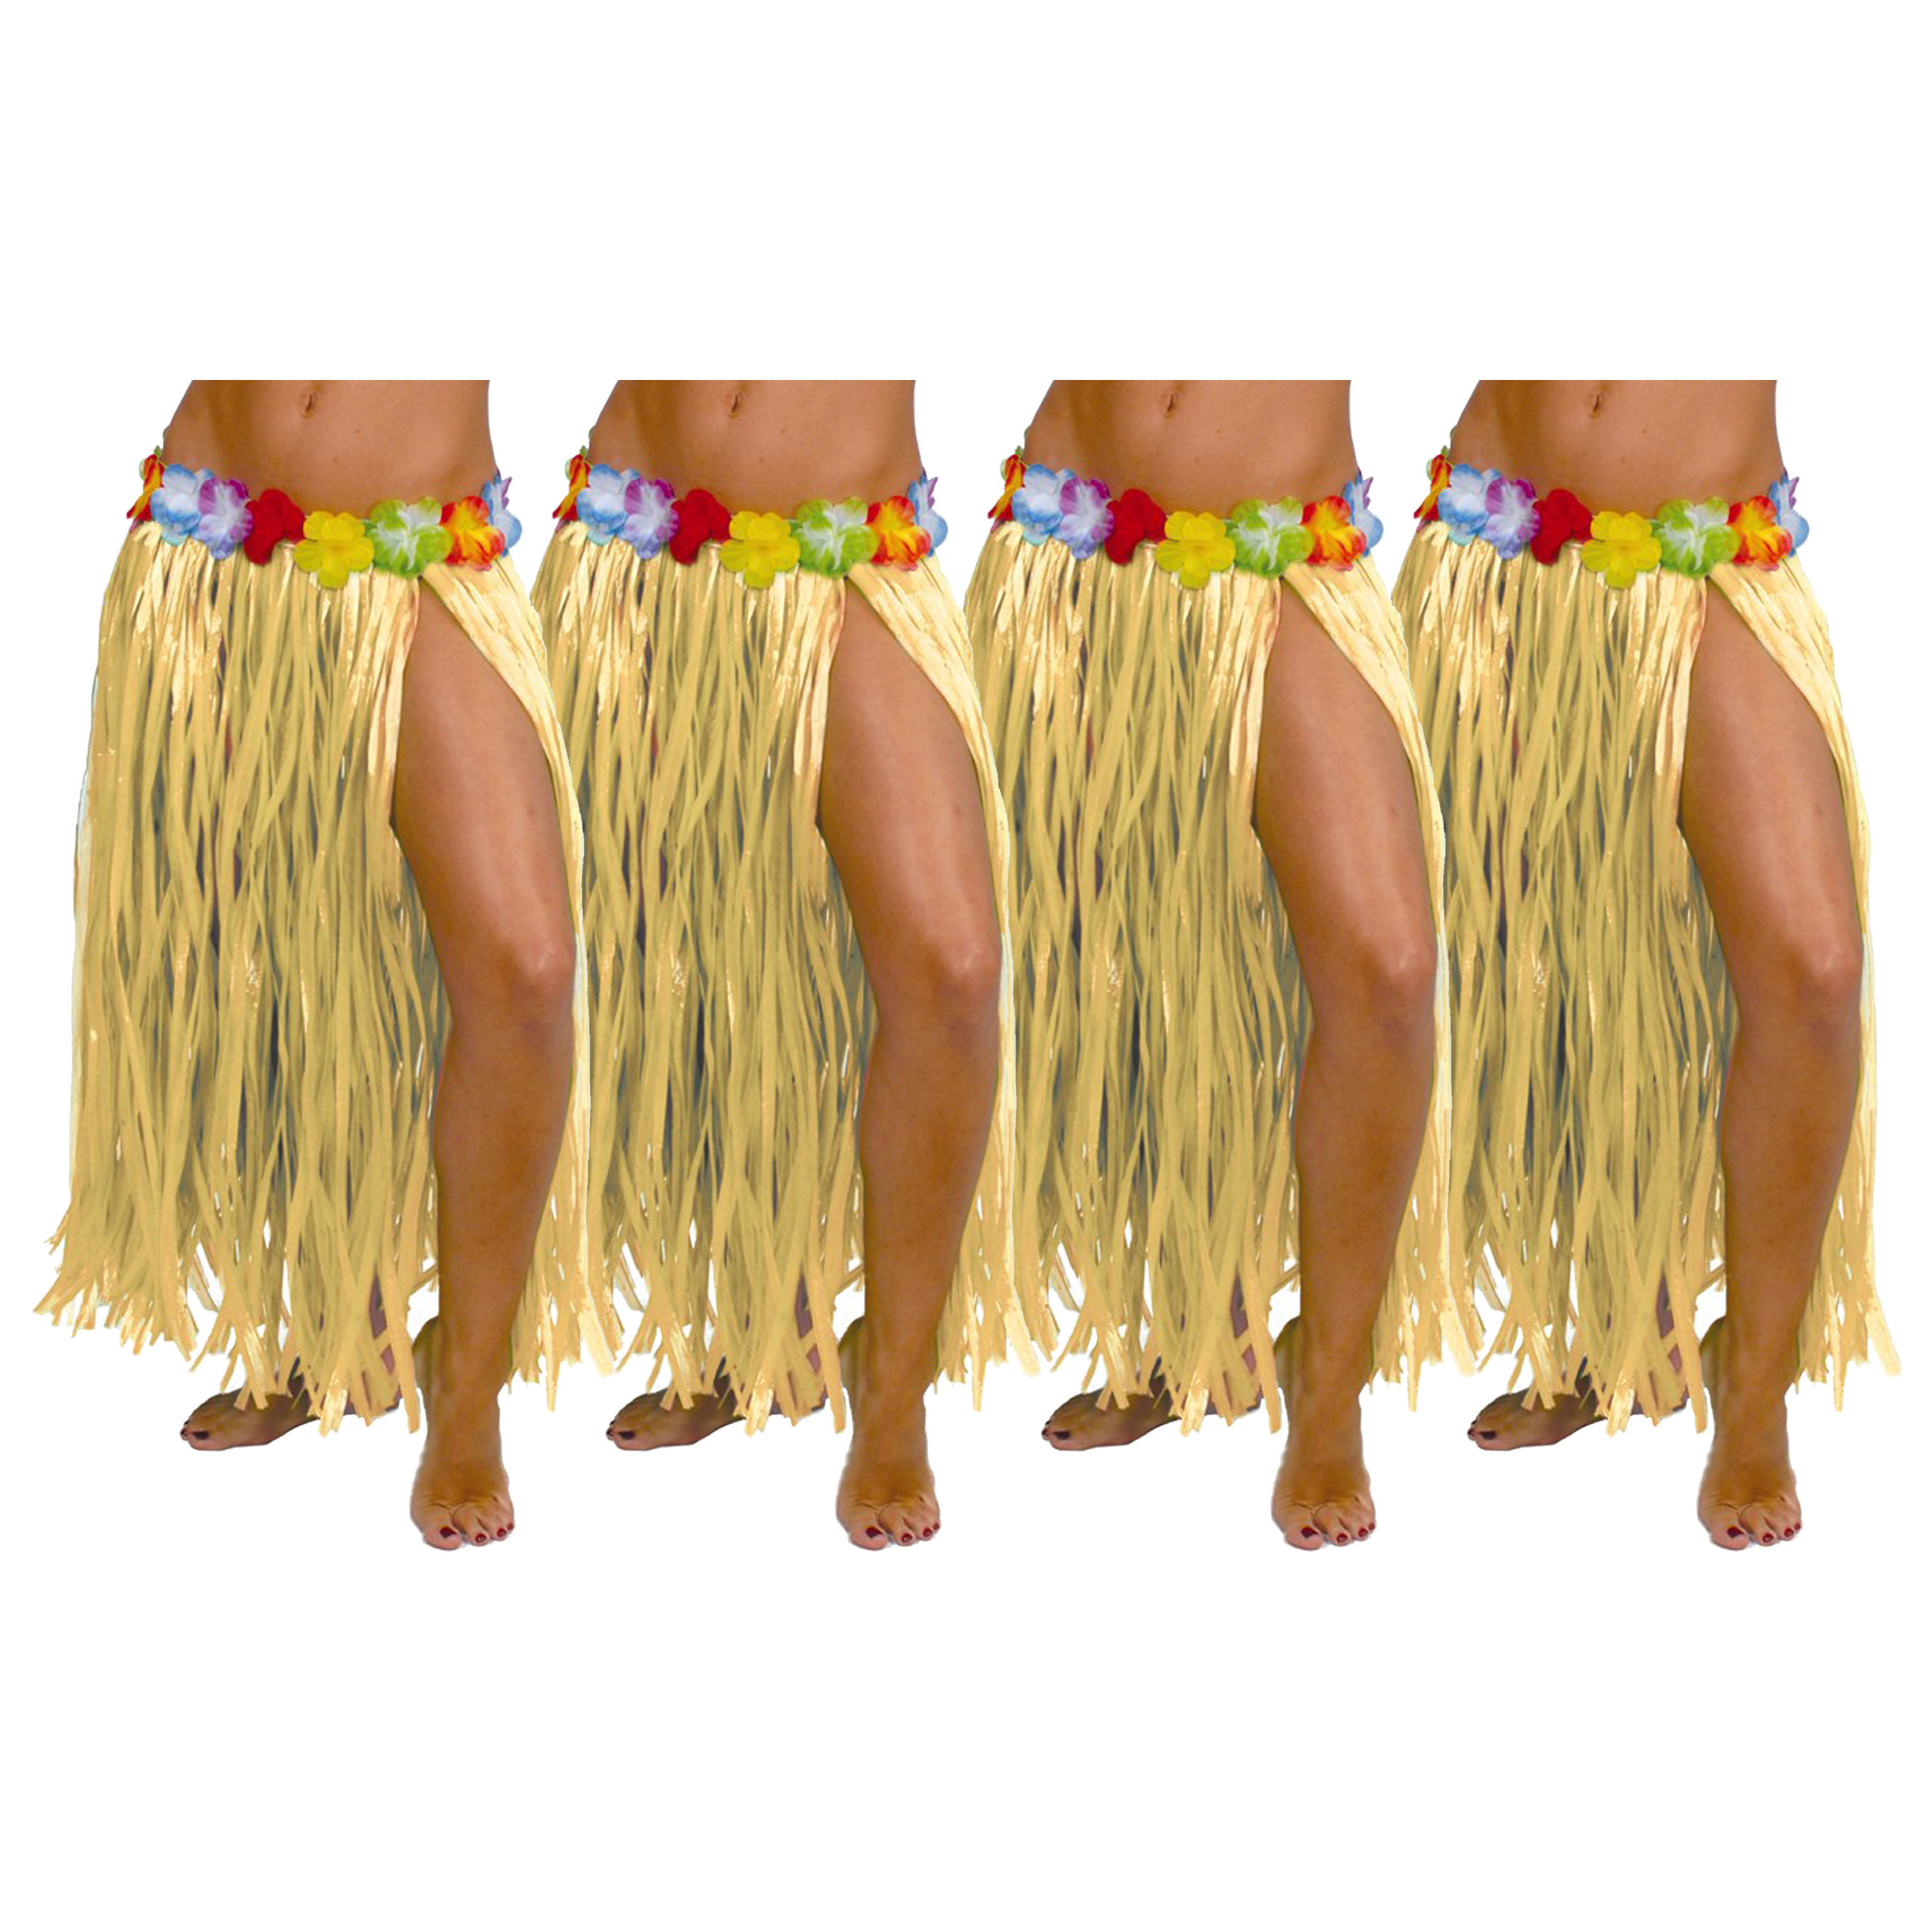 Hawaii verkleed rokje - 4x - voor volwassenen - naturel - 75 cm - rieten hoela rokje - tropisch